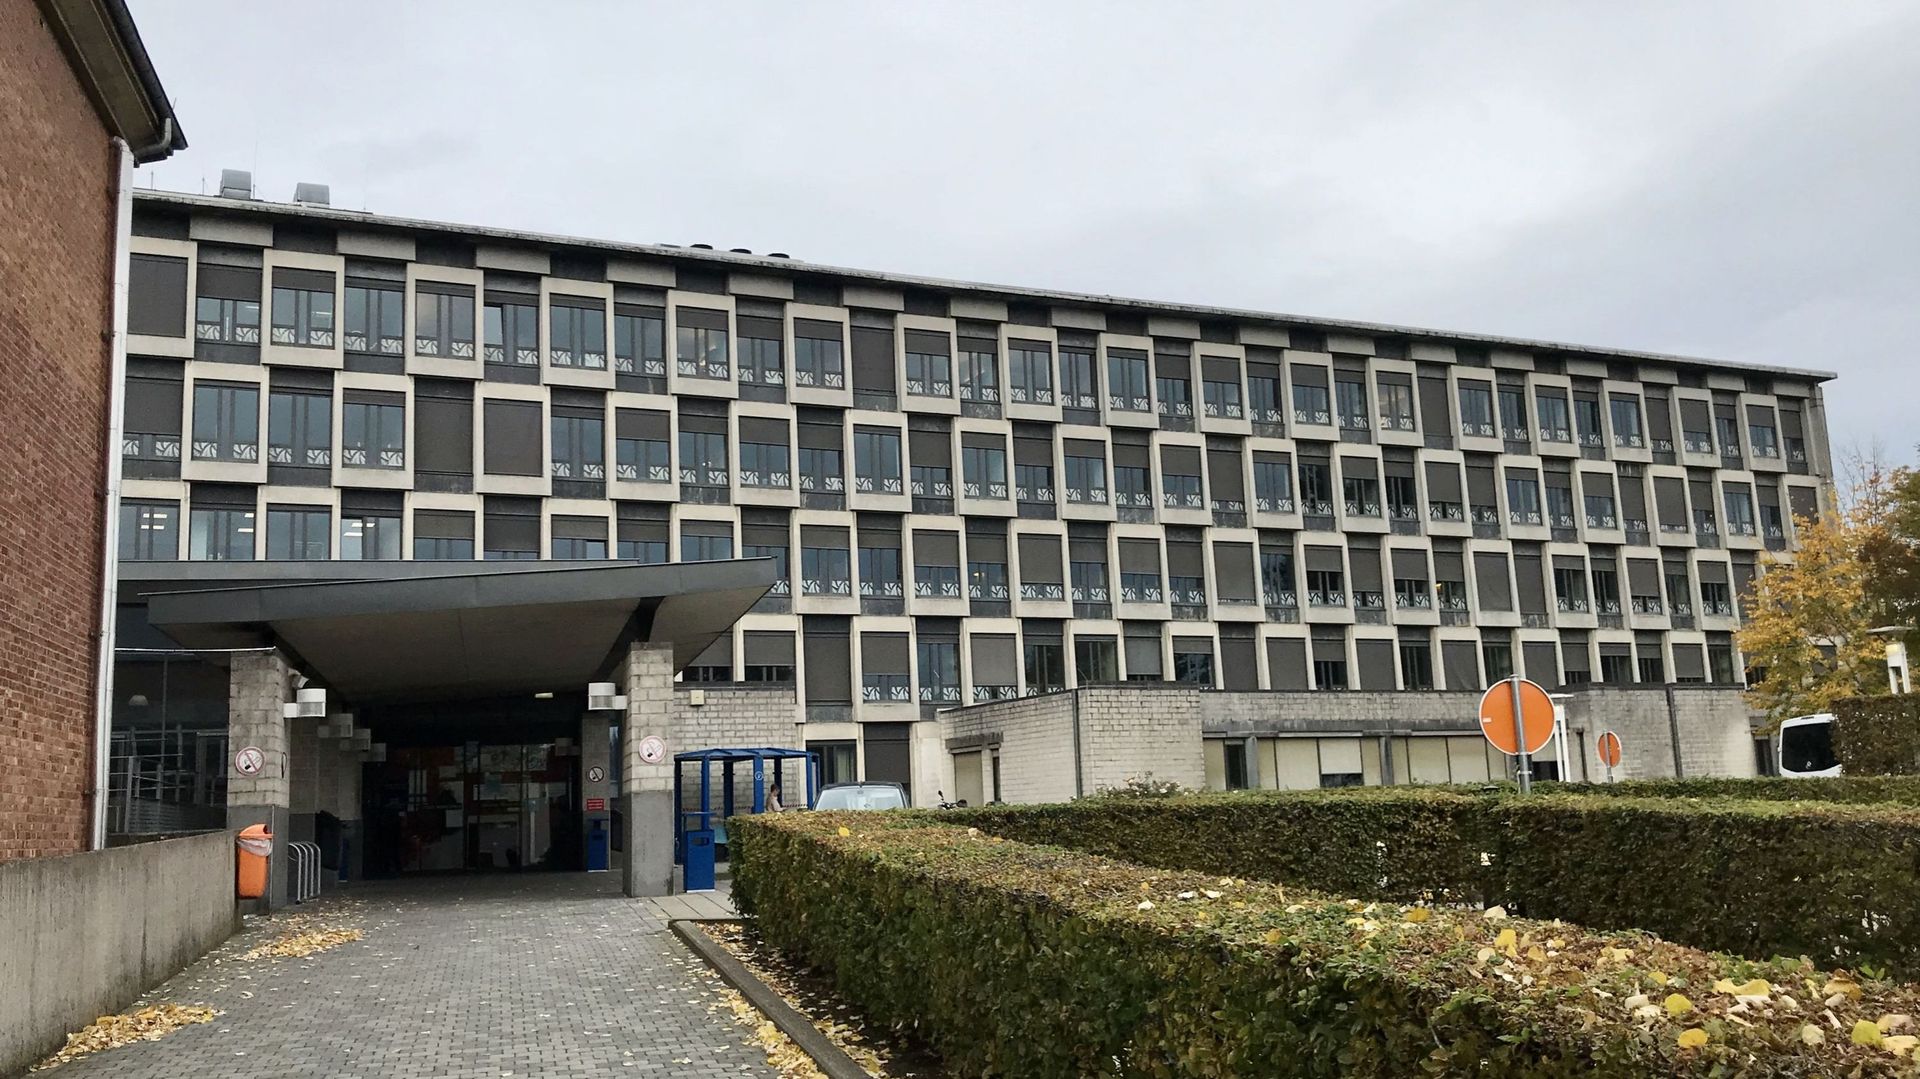 Le nombre de patients COVID augmente dans les hôpitaux de Vivalia